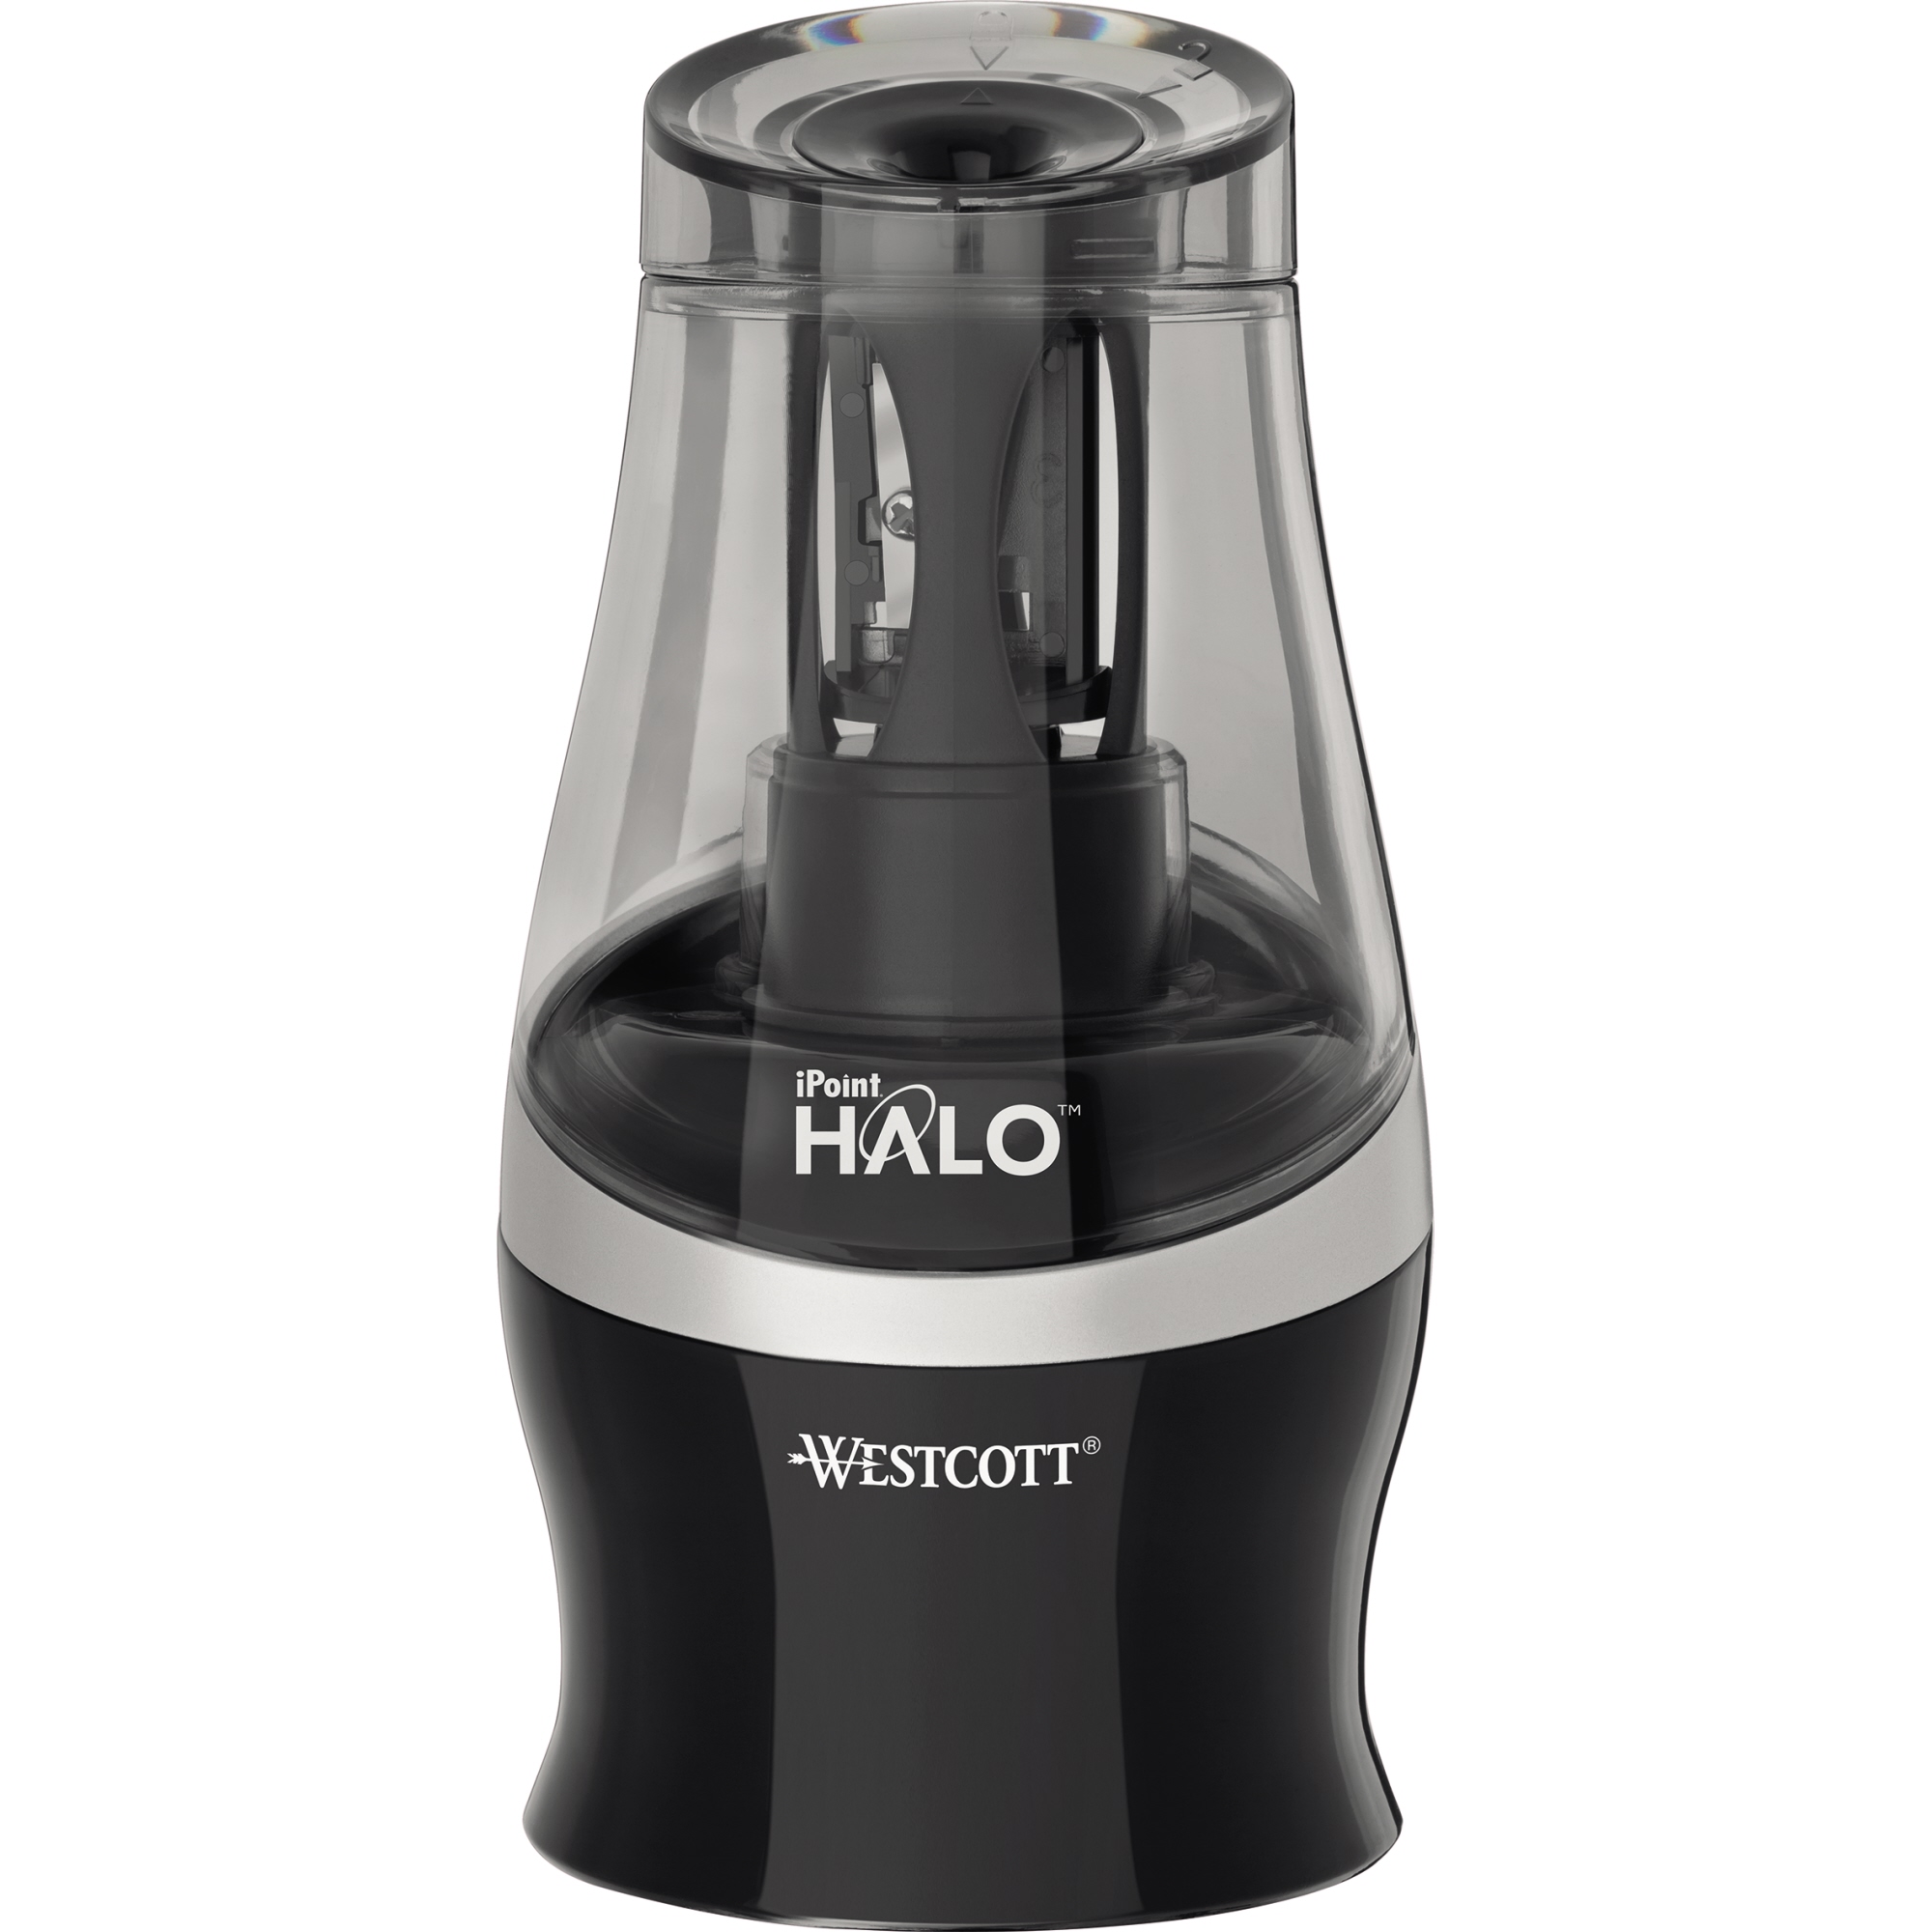 Westcott Anspitzdose iPoint Halo elektrisch 8mm schwarz